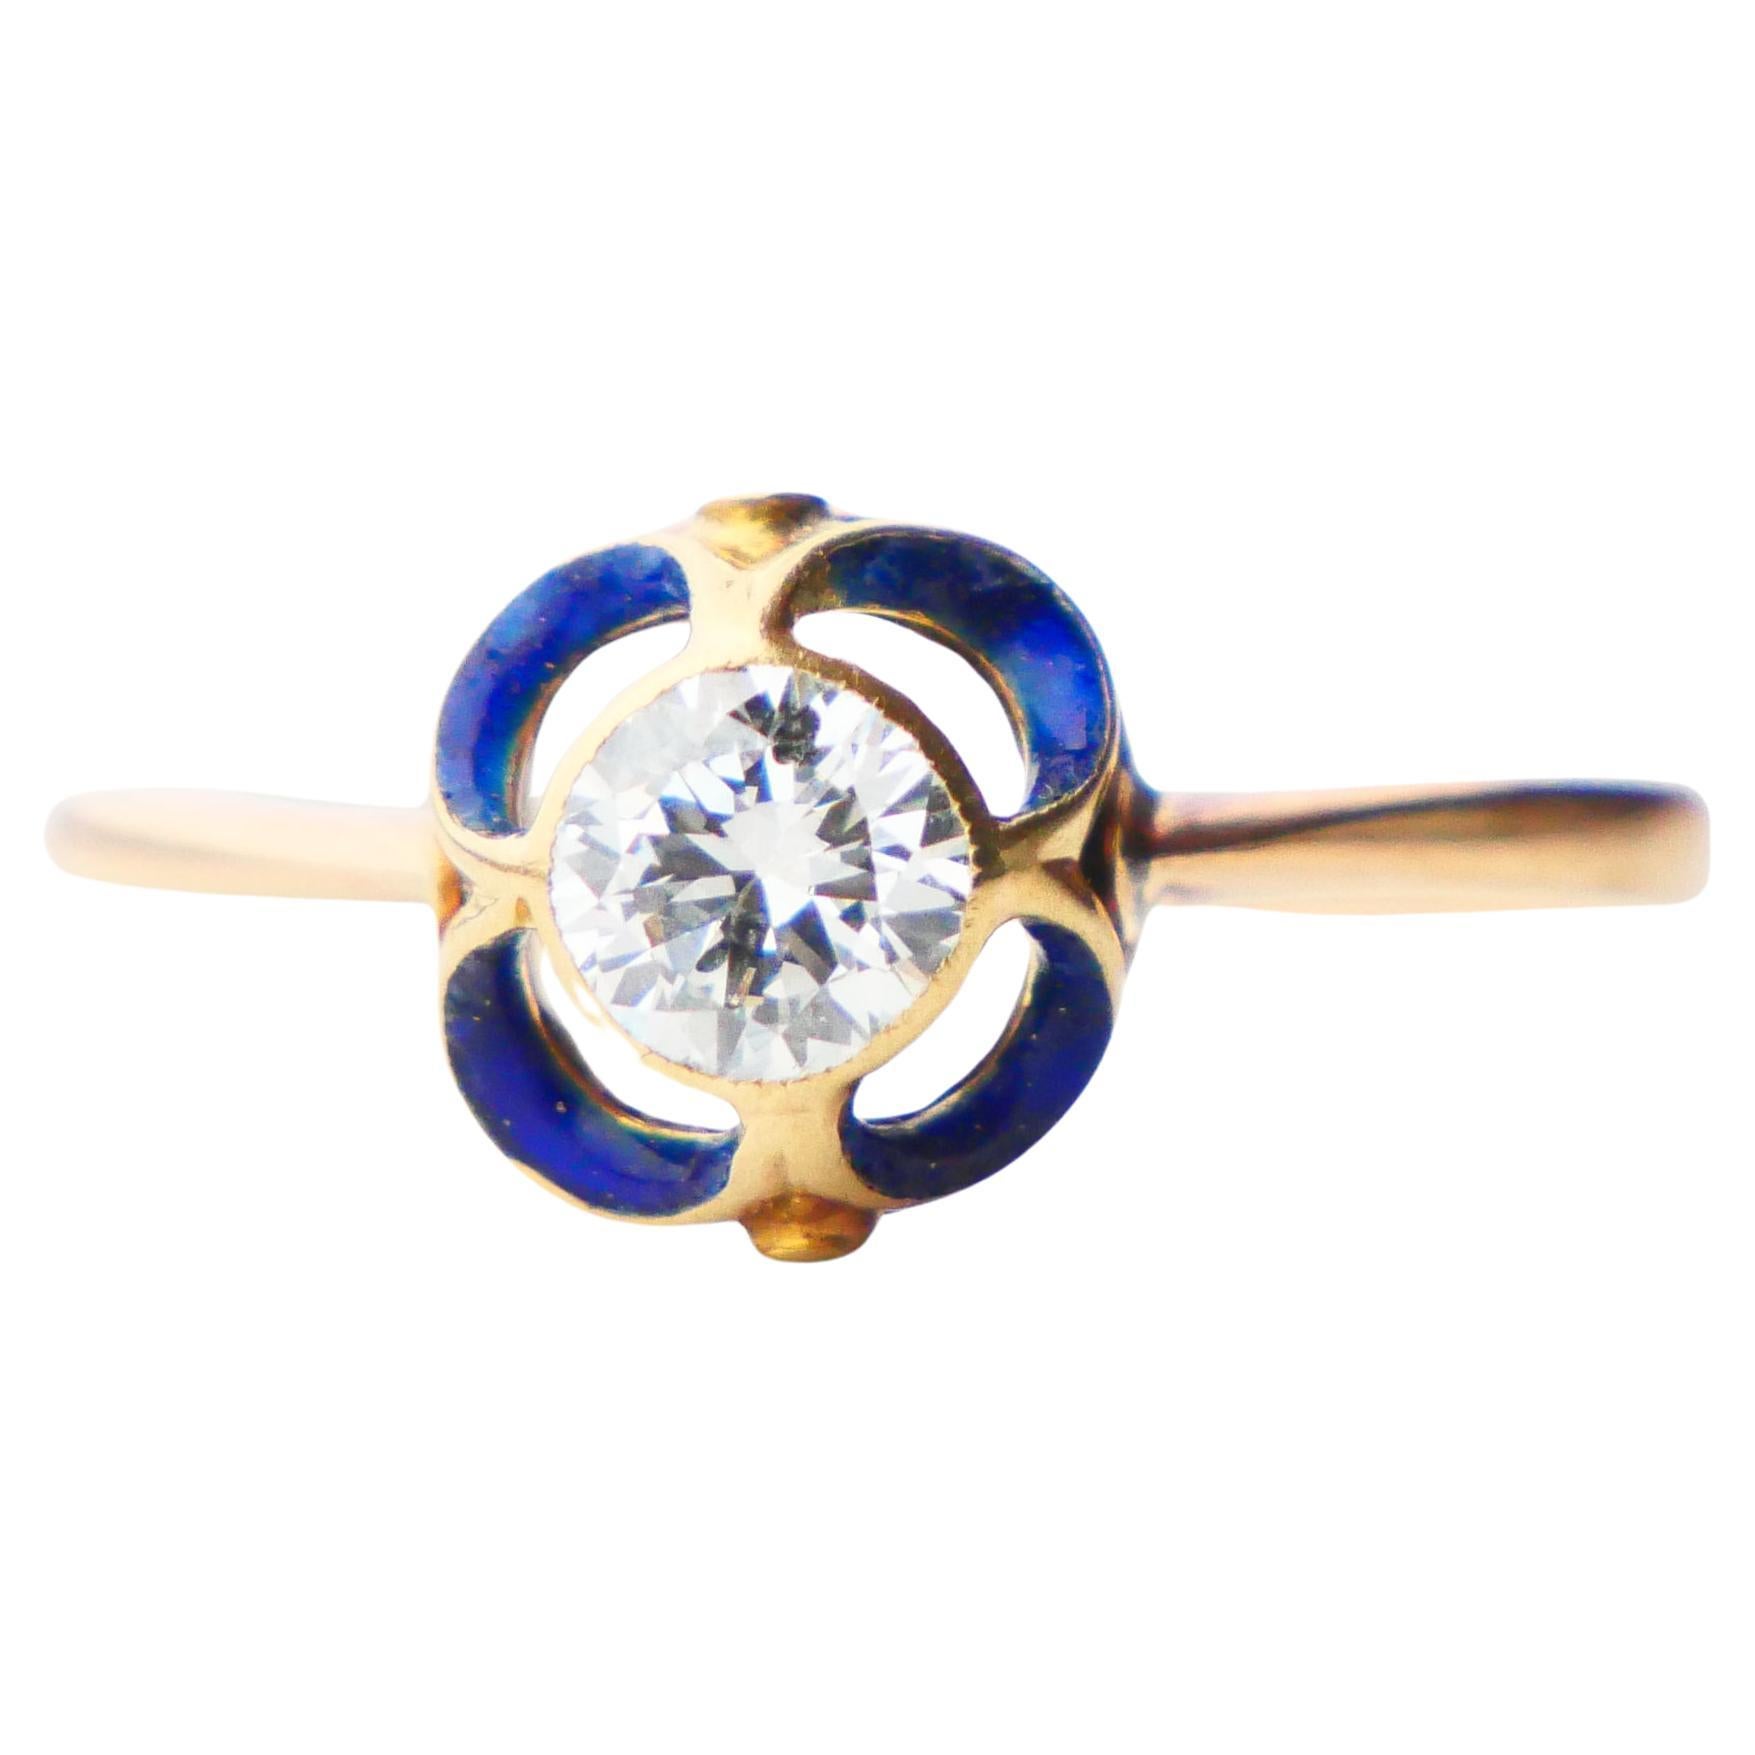 1904 Nordic Art Nouveau Ring 05ct. Diamond Blue Enamel 18K Gold ØUS9.5/2.5gr For Sale